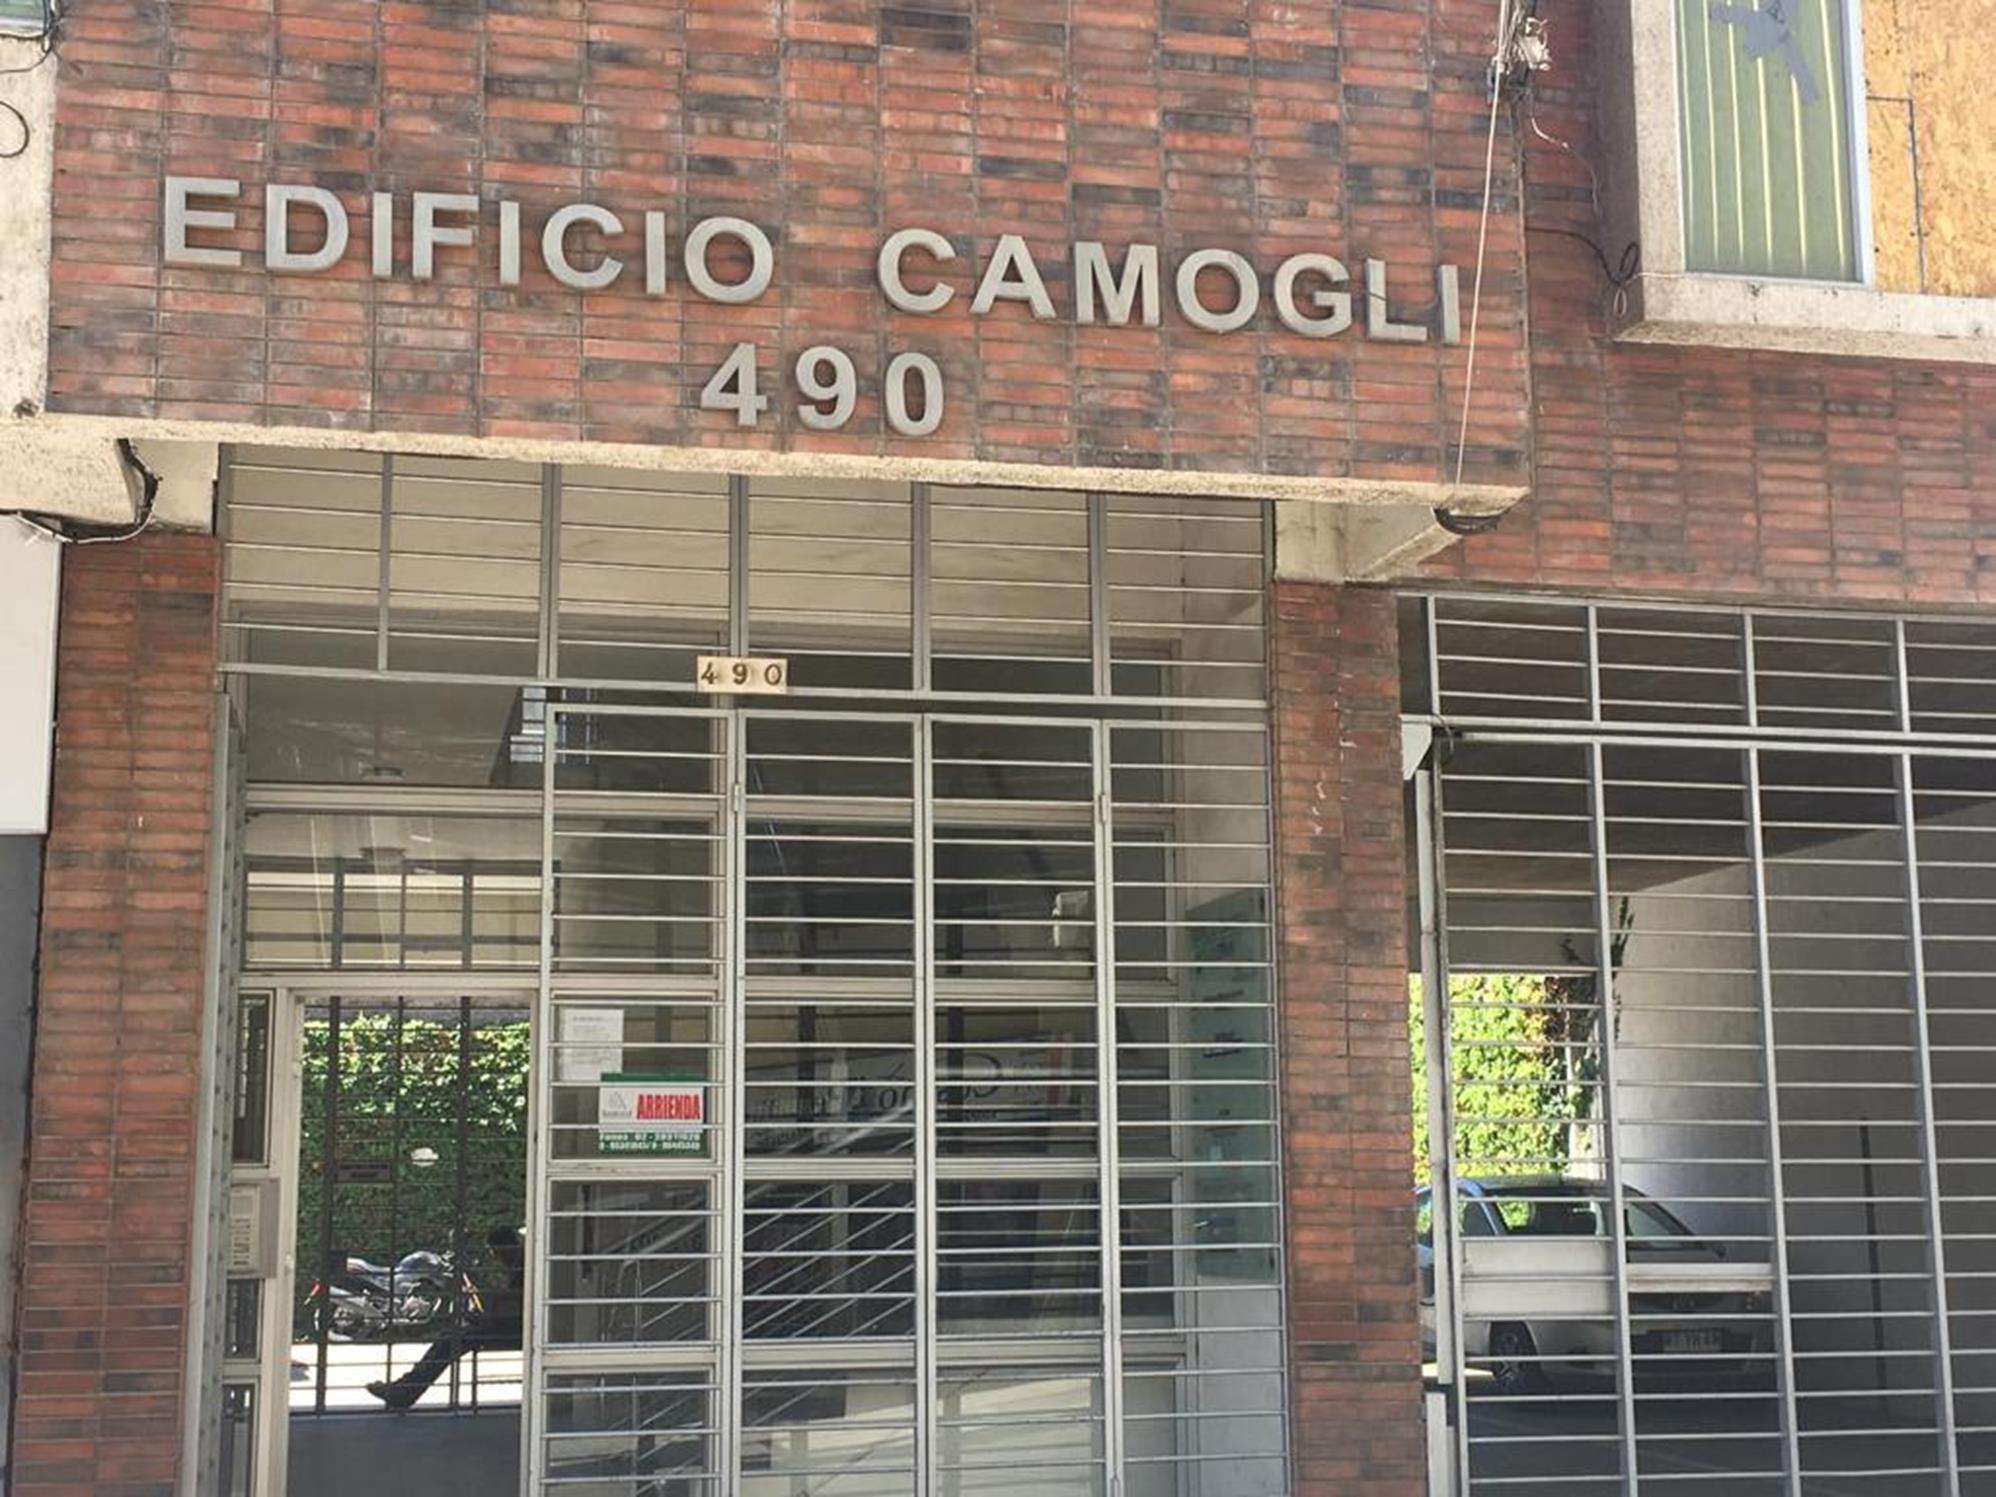 Oficina en Edificio Camogli. Ubicada en calle Serrano a metros de la plaza de Armas.